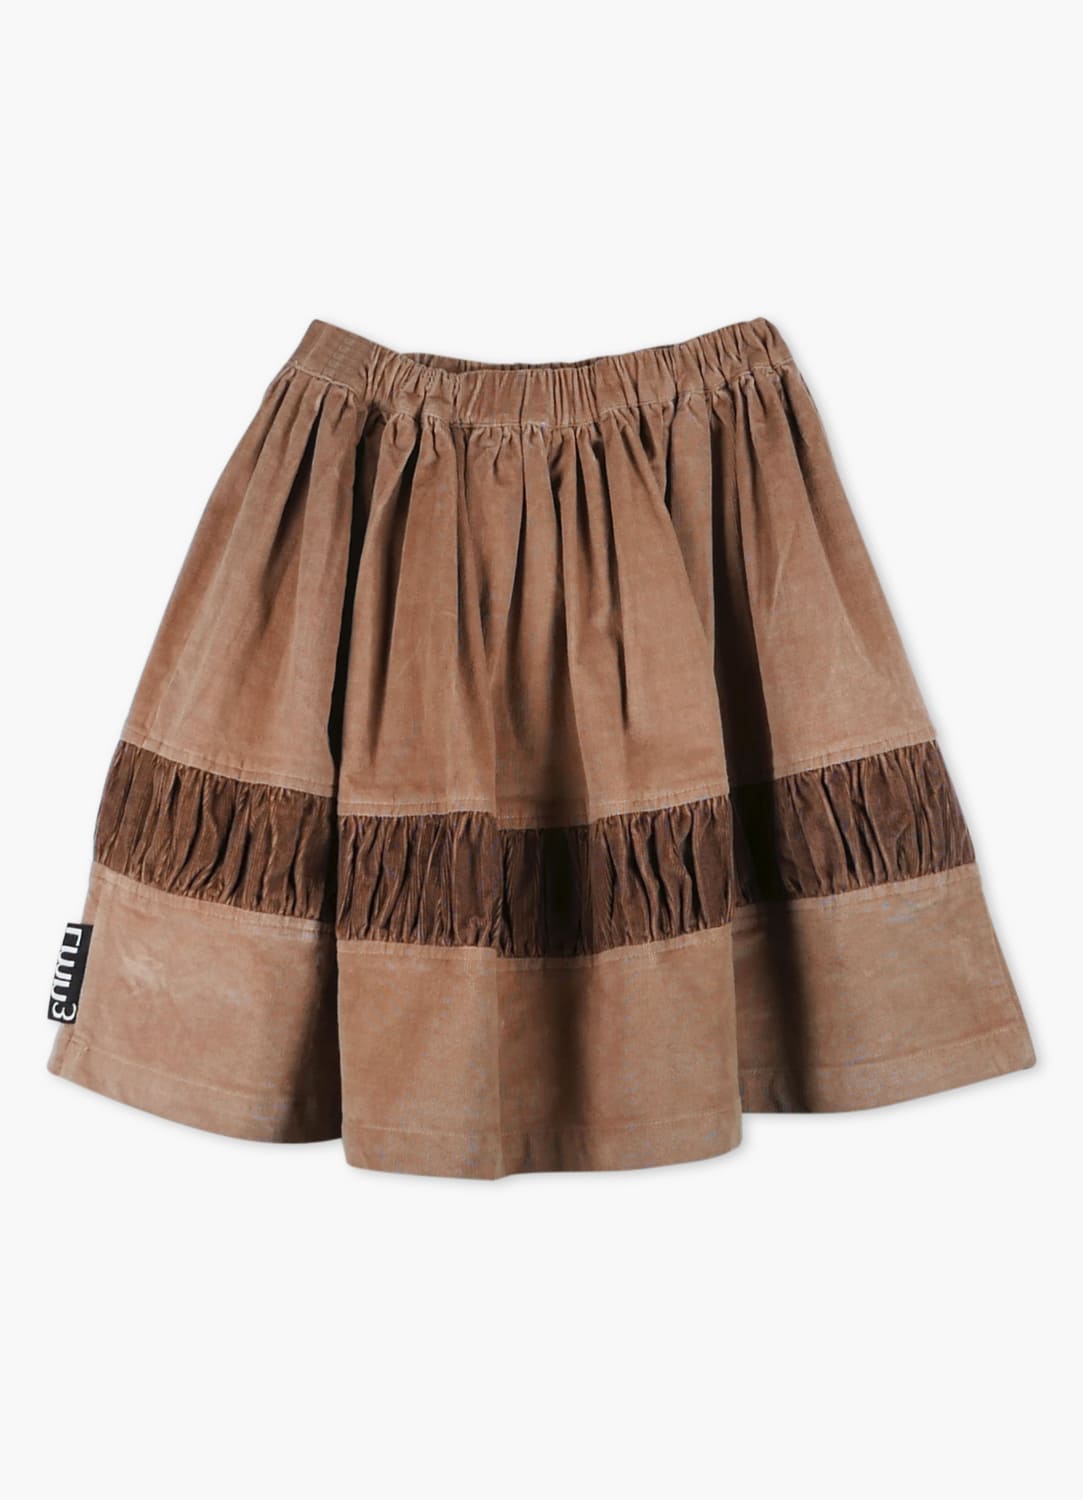 Lmn3 Stripe Skirt - Raw Umber